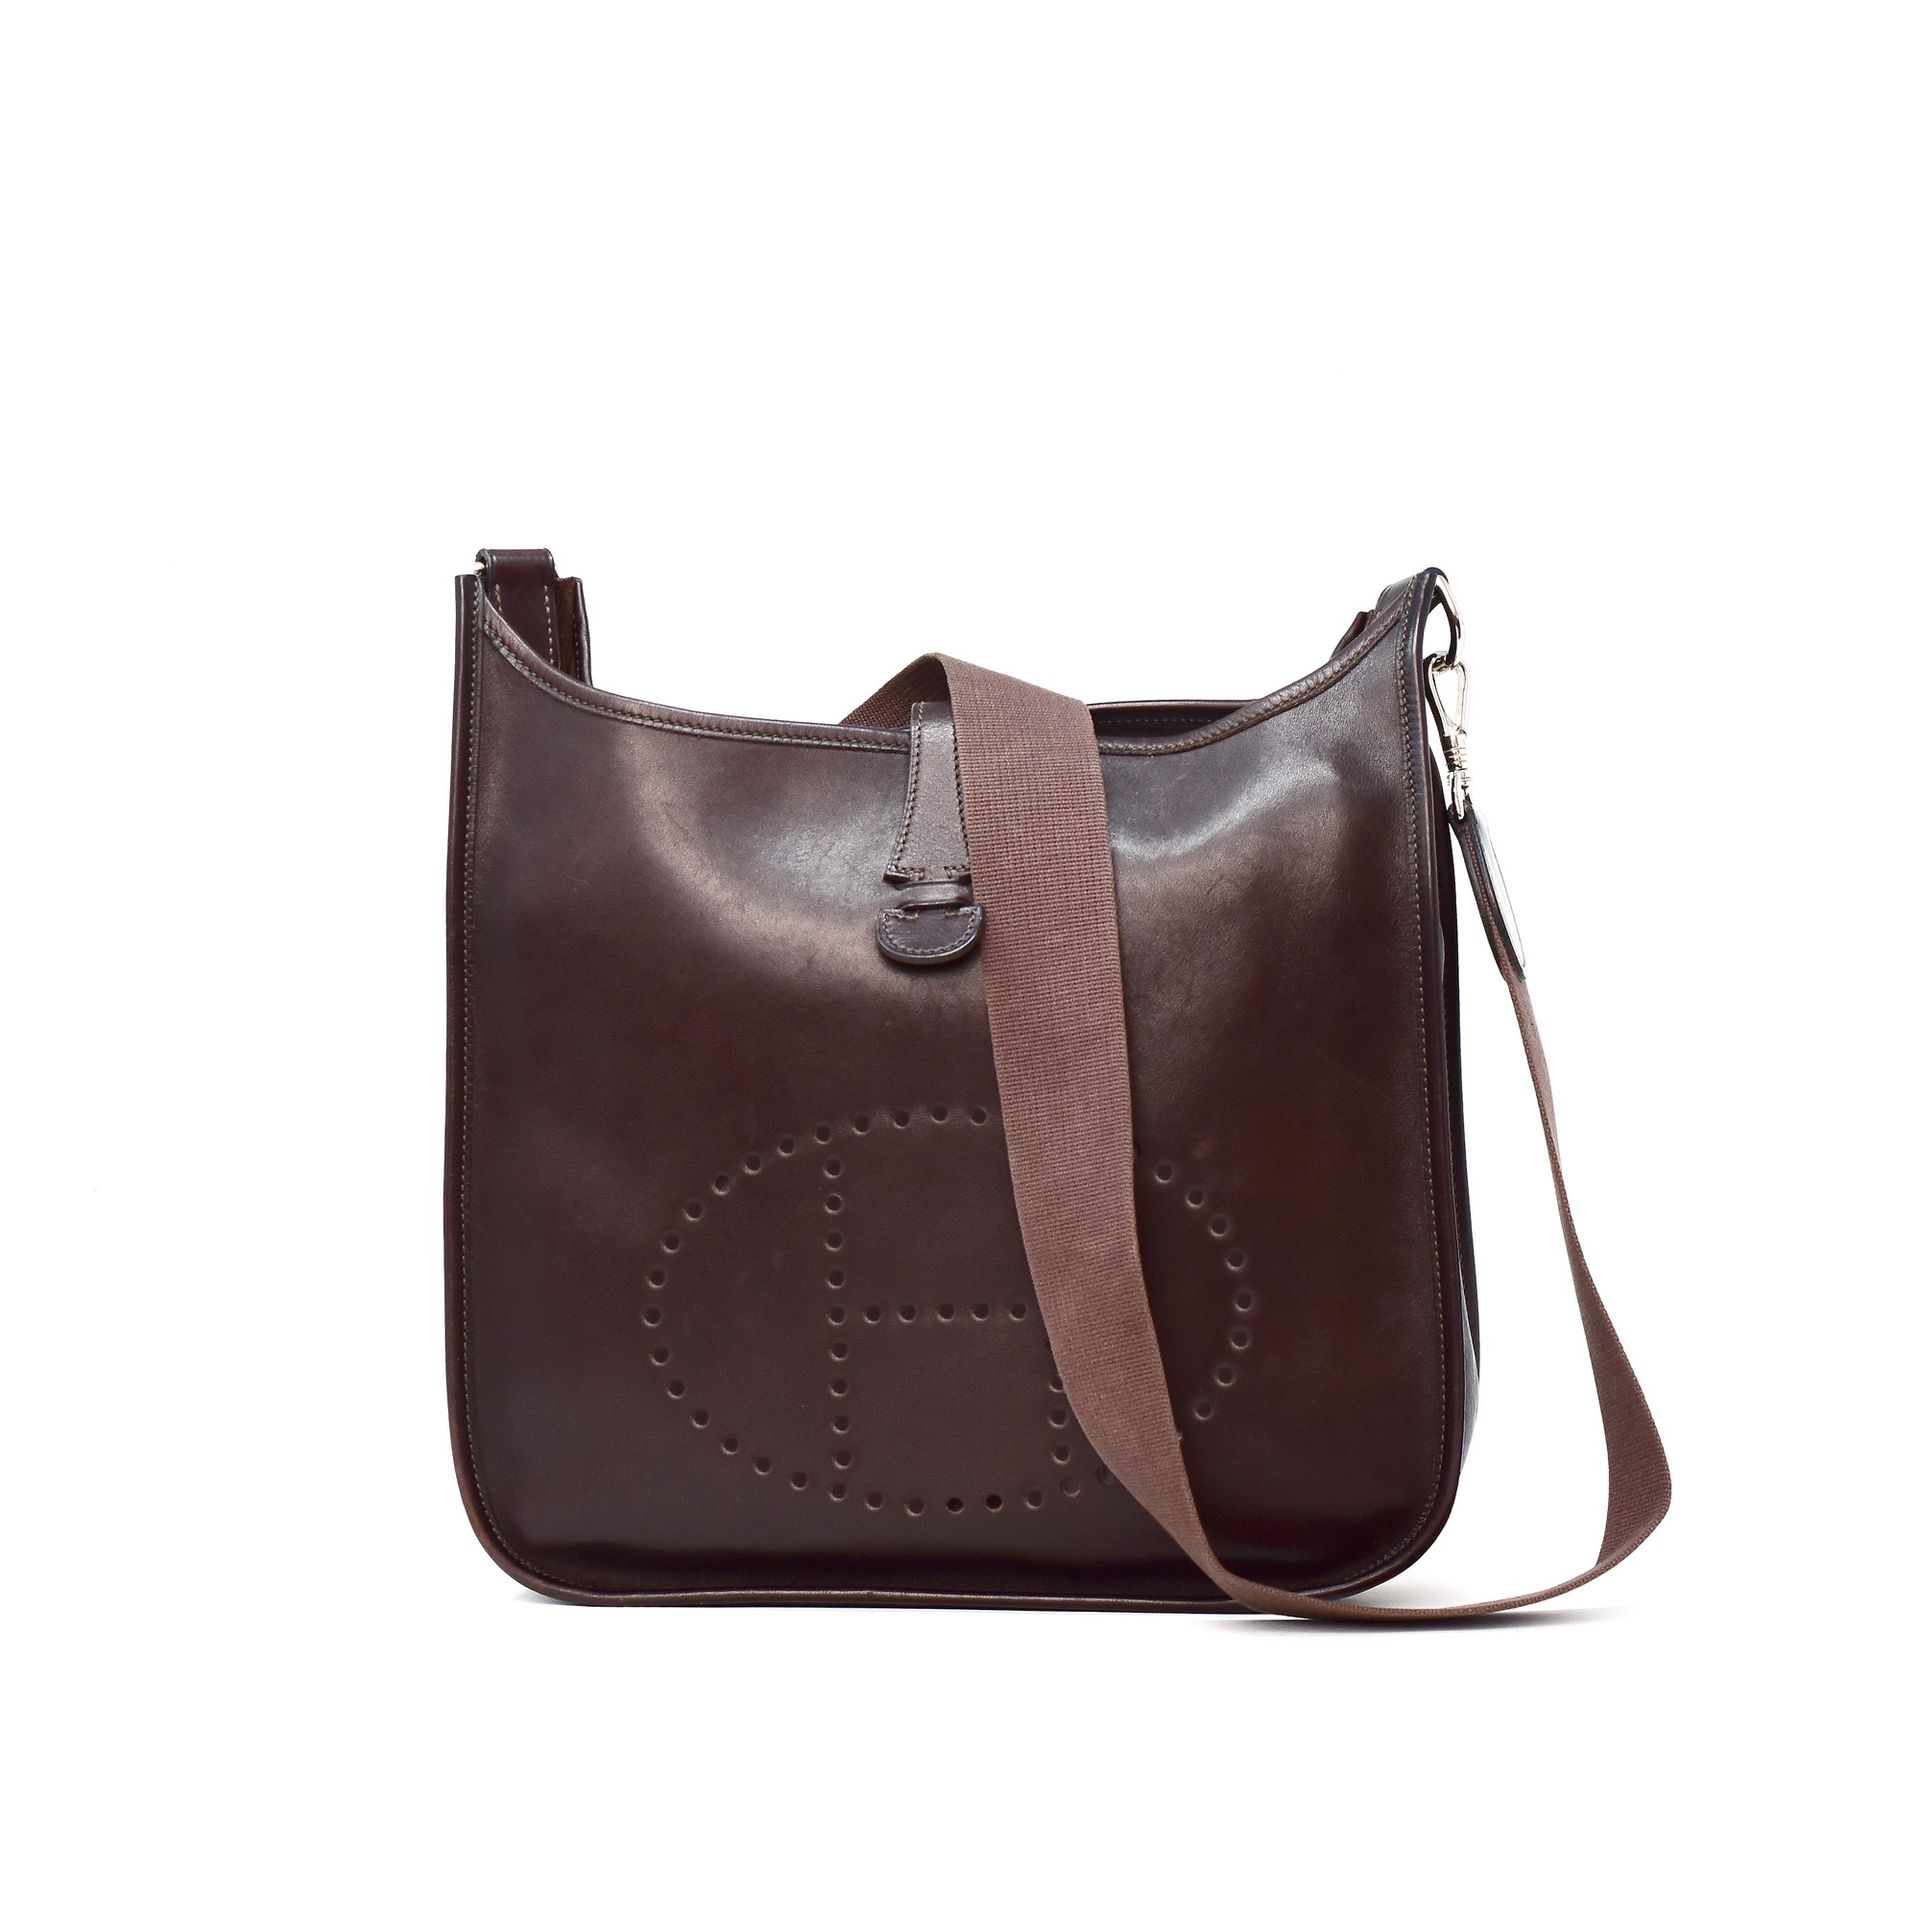 HERMES Hermès Evelyne shoulder bag in dark brown leather, palladium hardware, ad&hellip;